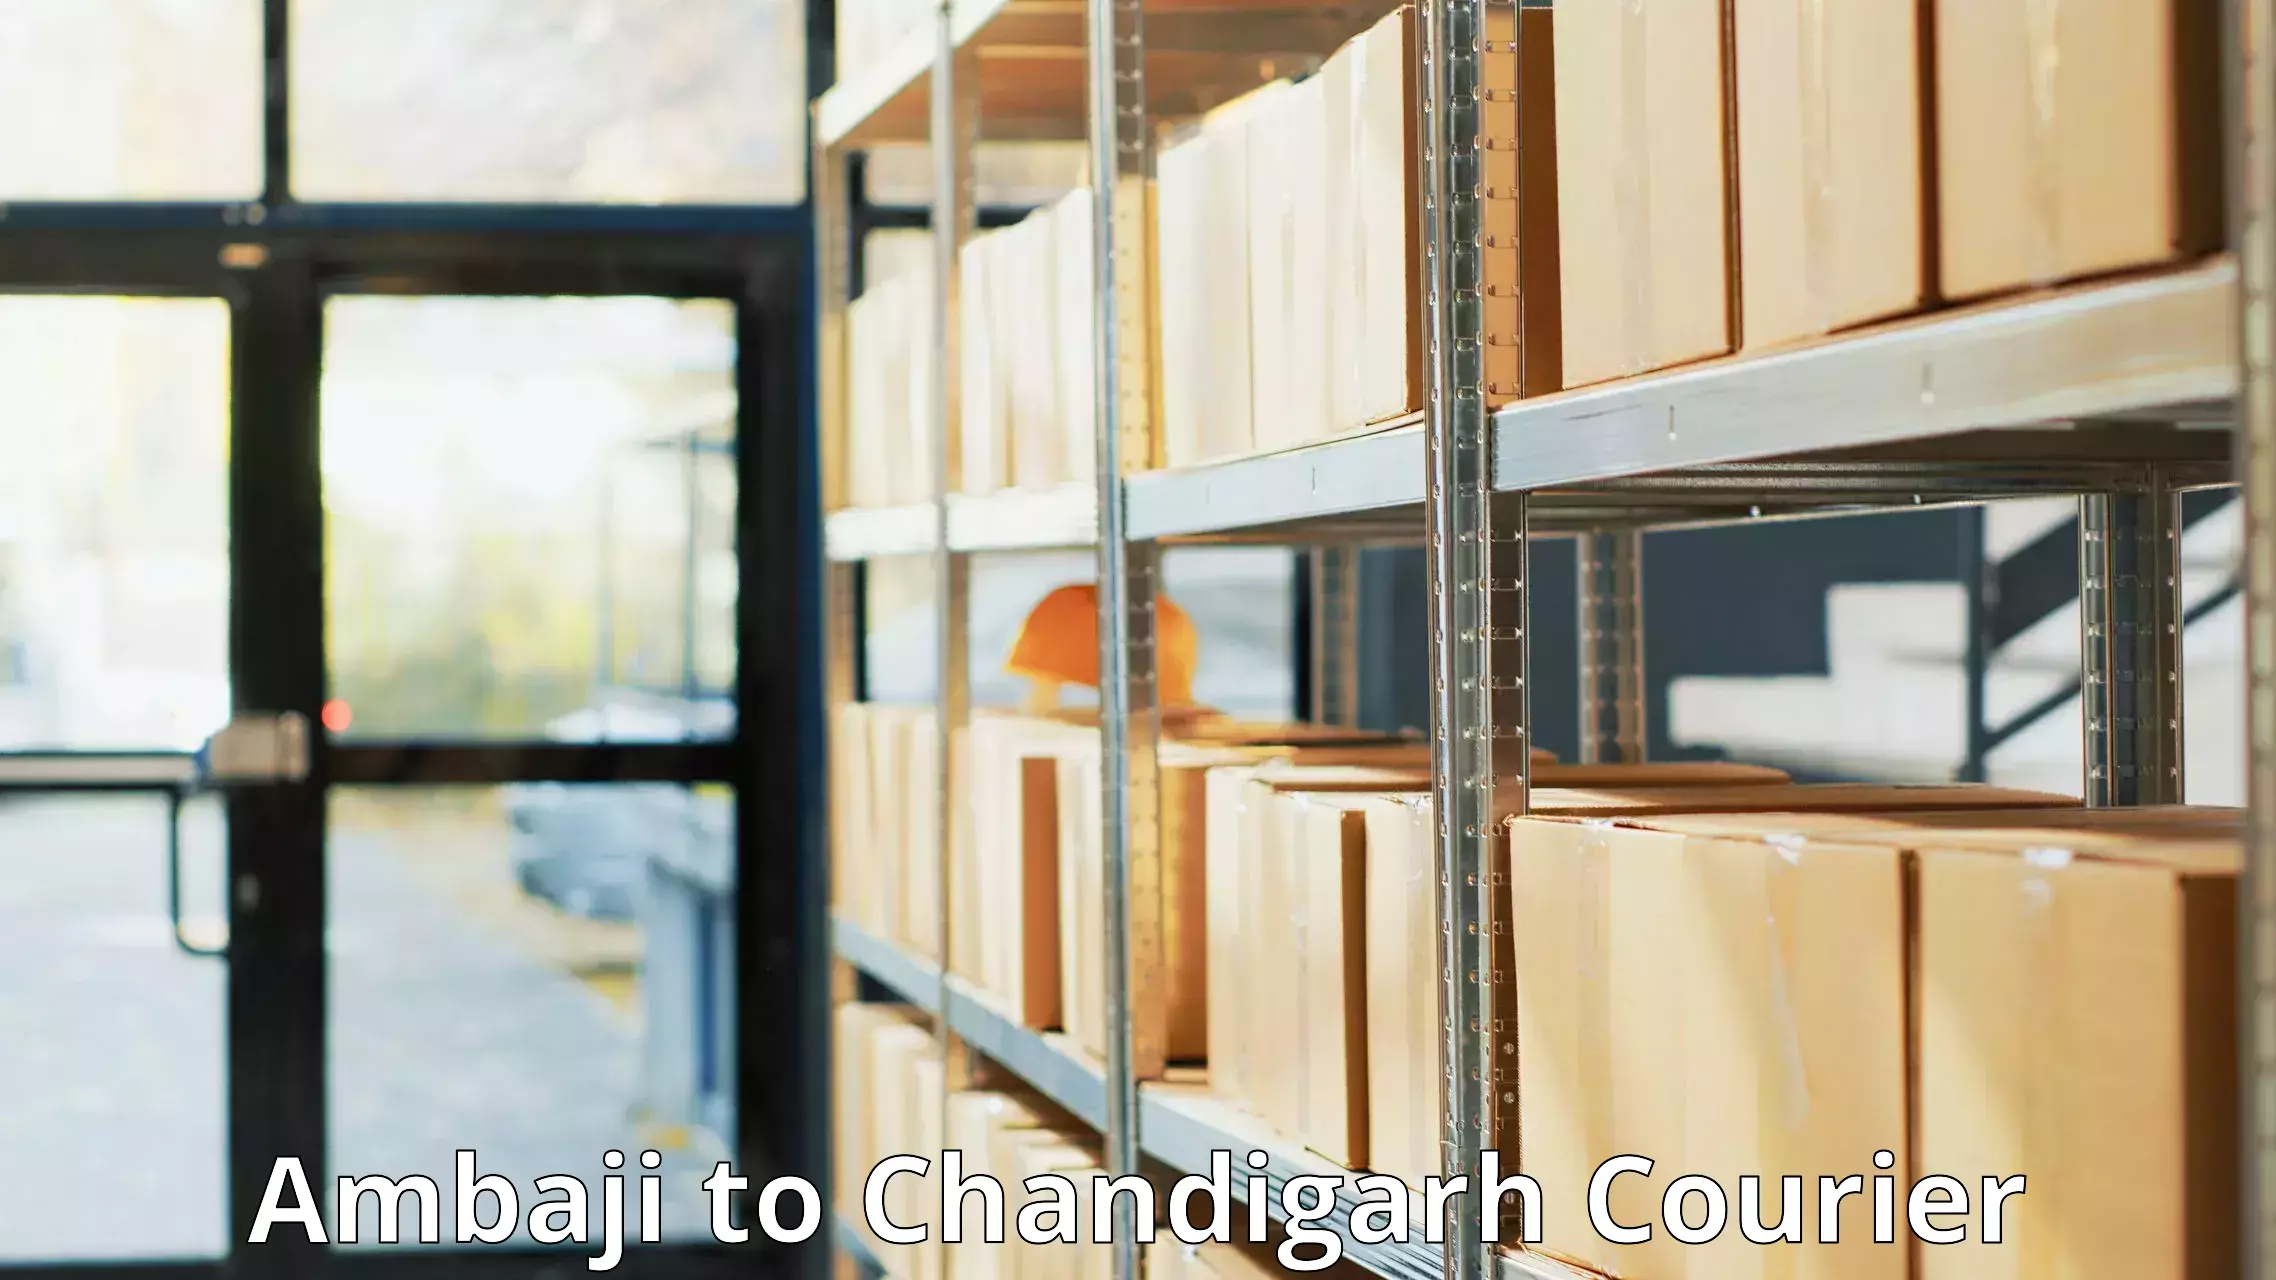 Customizable shipping options Ambaji to Chandigarh